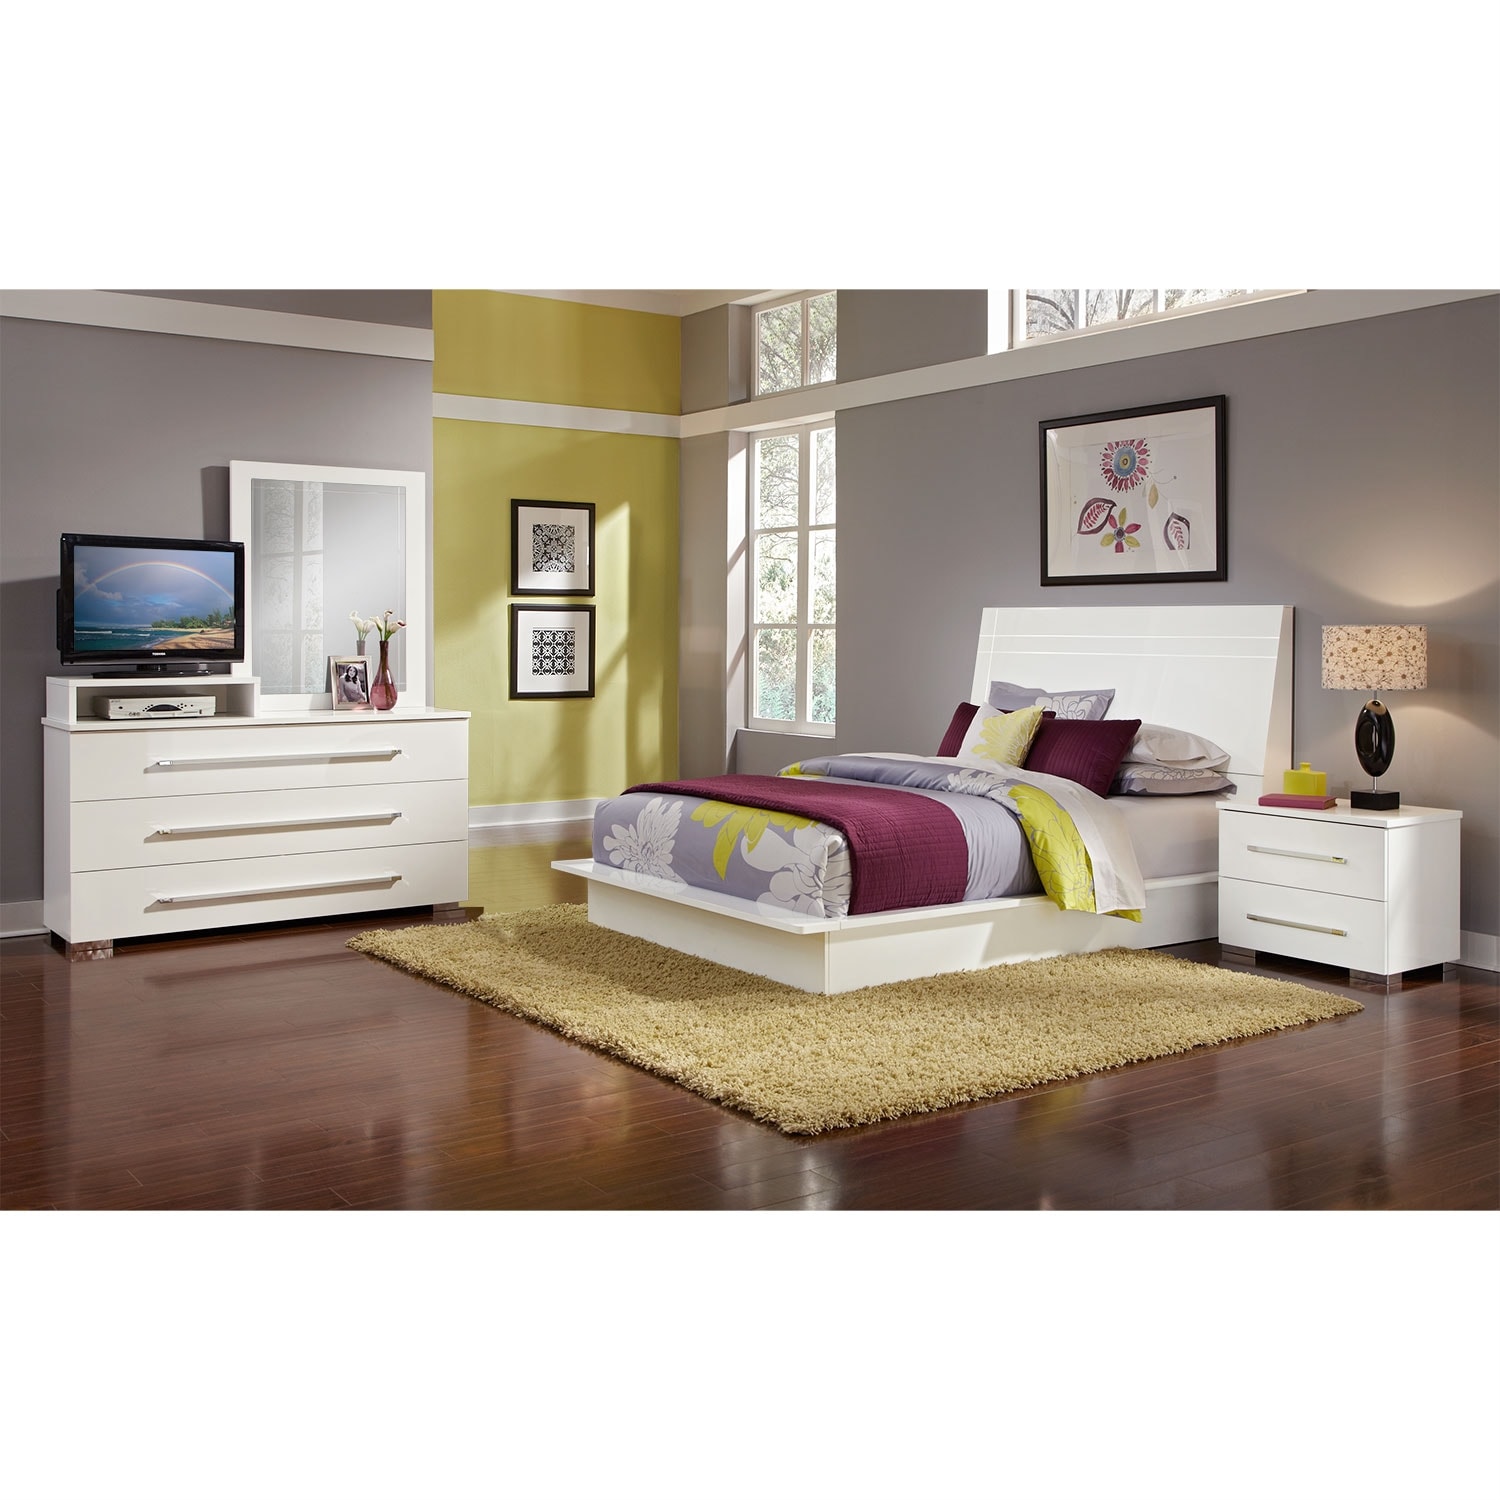 Value City Furniture Bedroom Sets